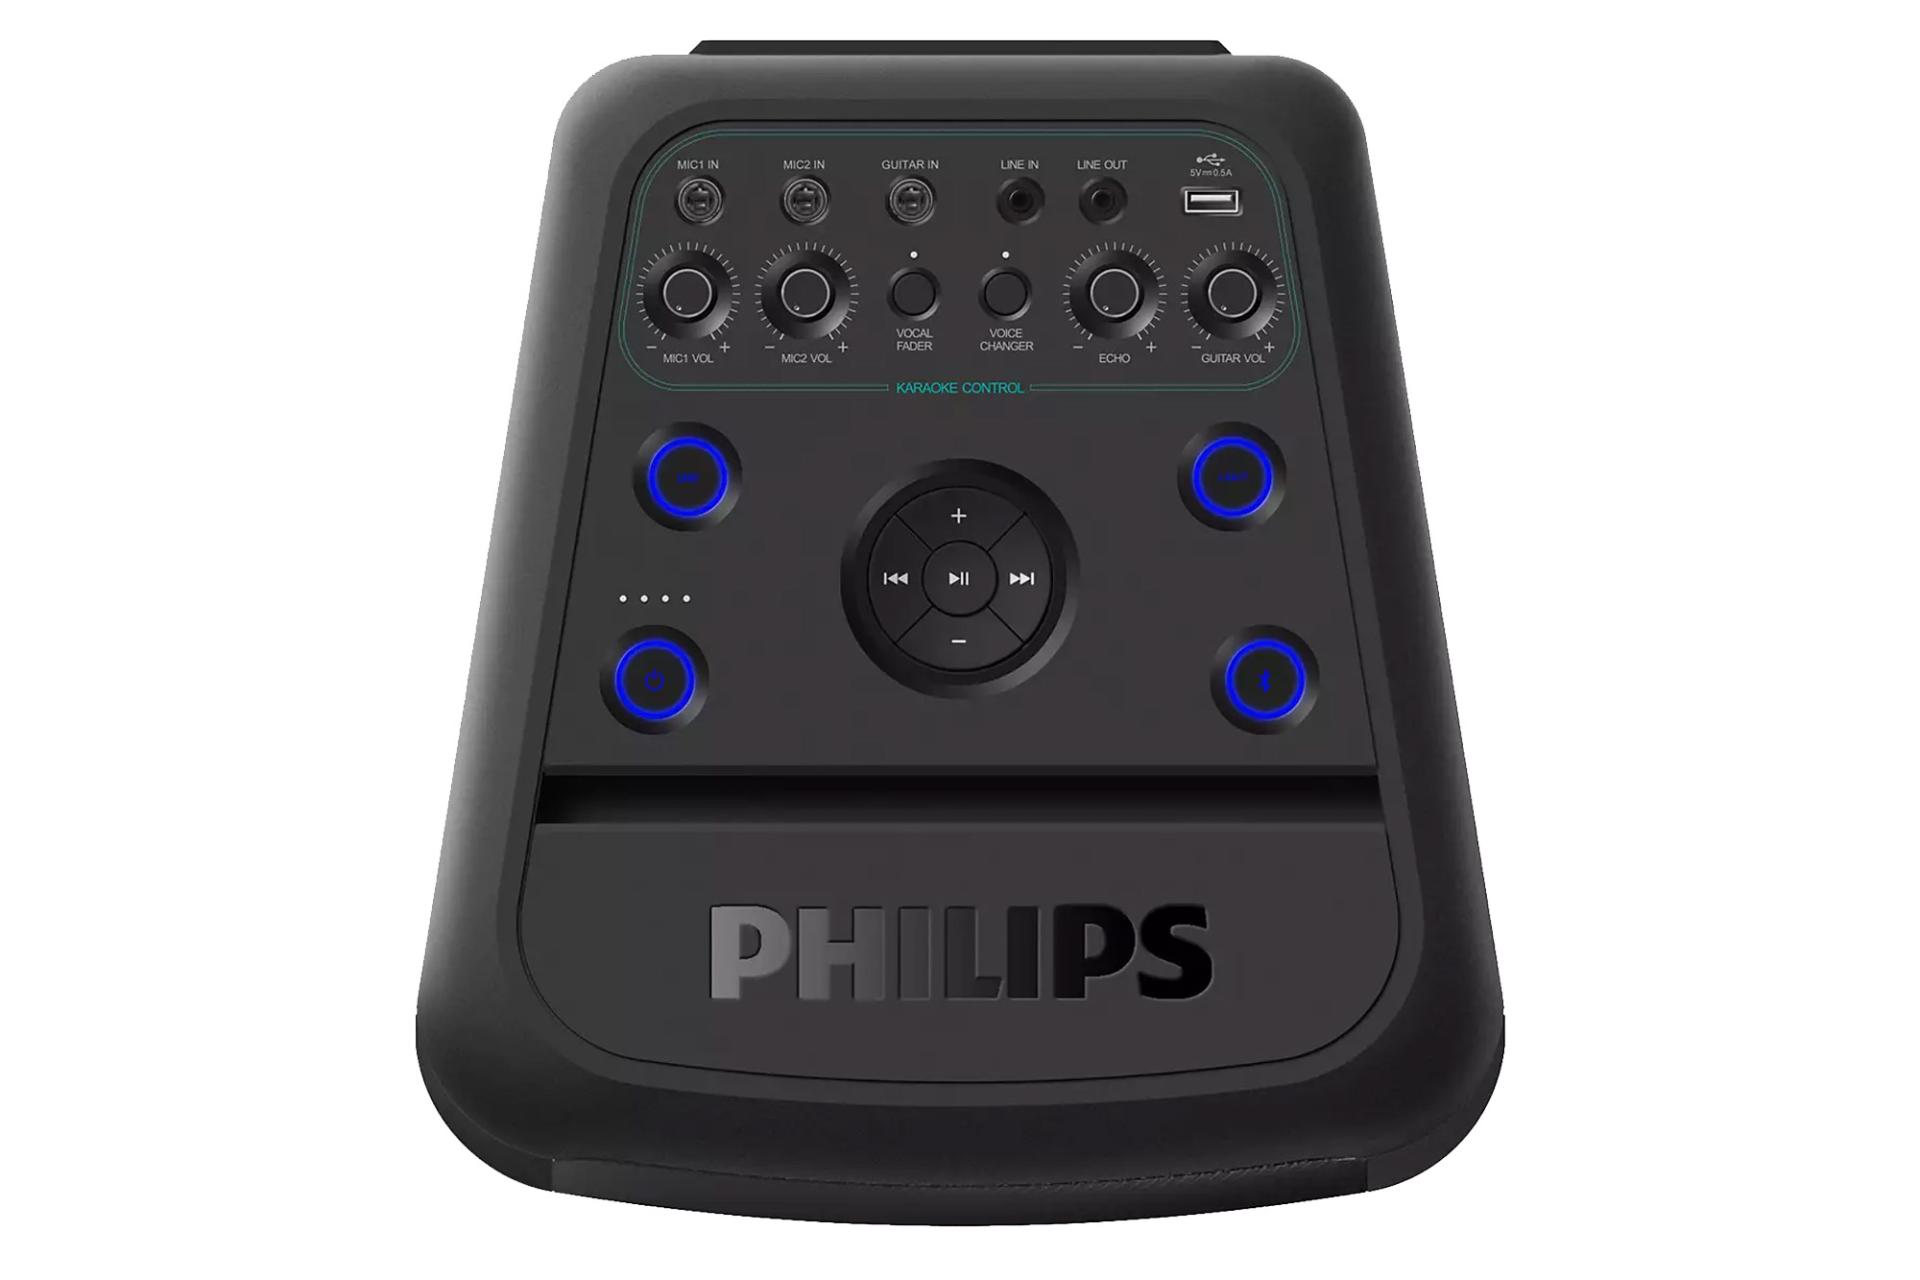 اسپیکر فیلیپس Philips Tanx100 نمای بالا